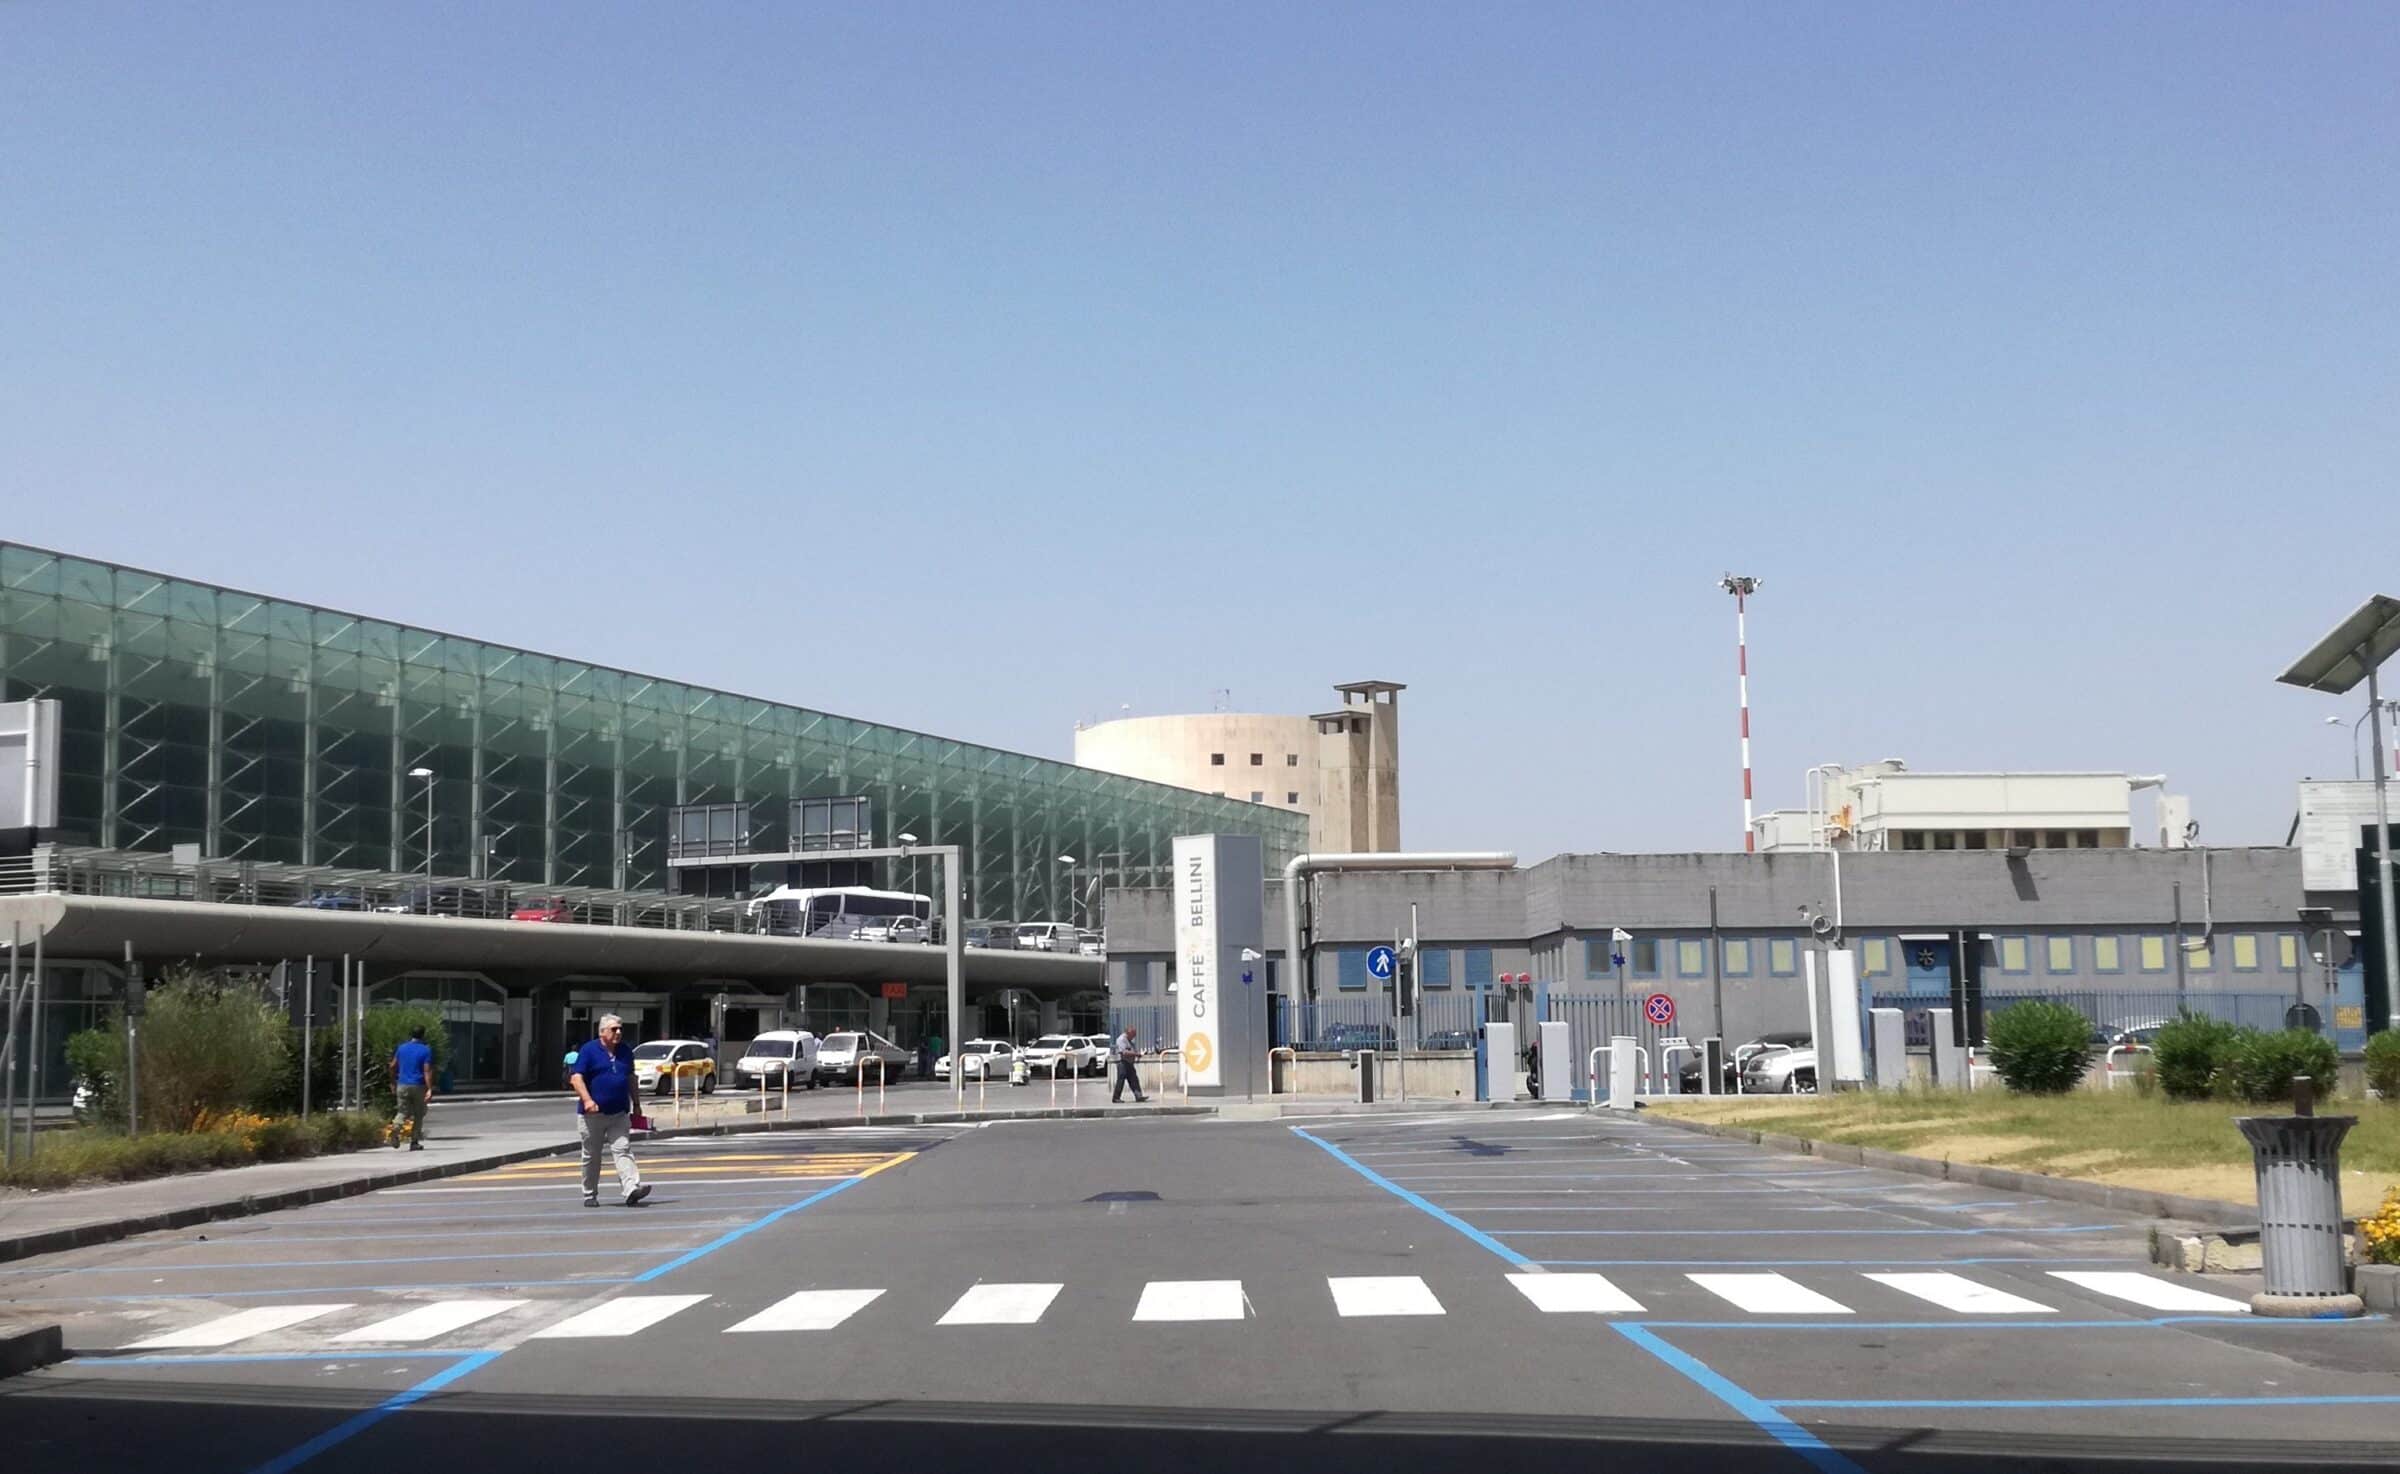 Nasce Apas, l’associazione dei parcheggi aeroportuali siciliani